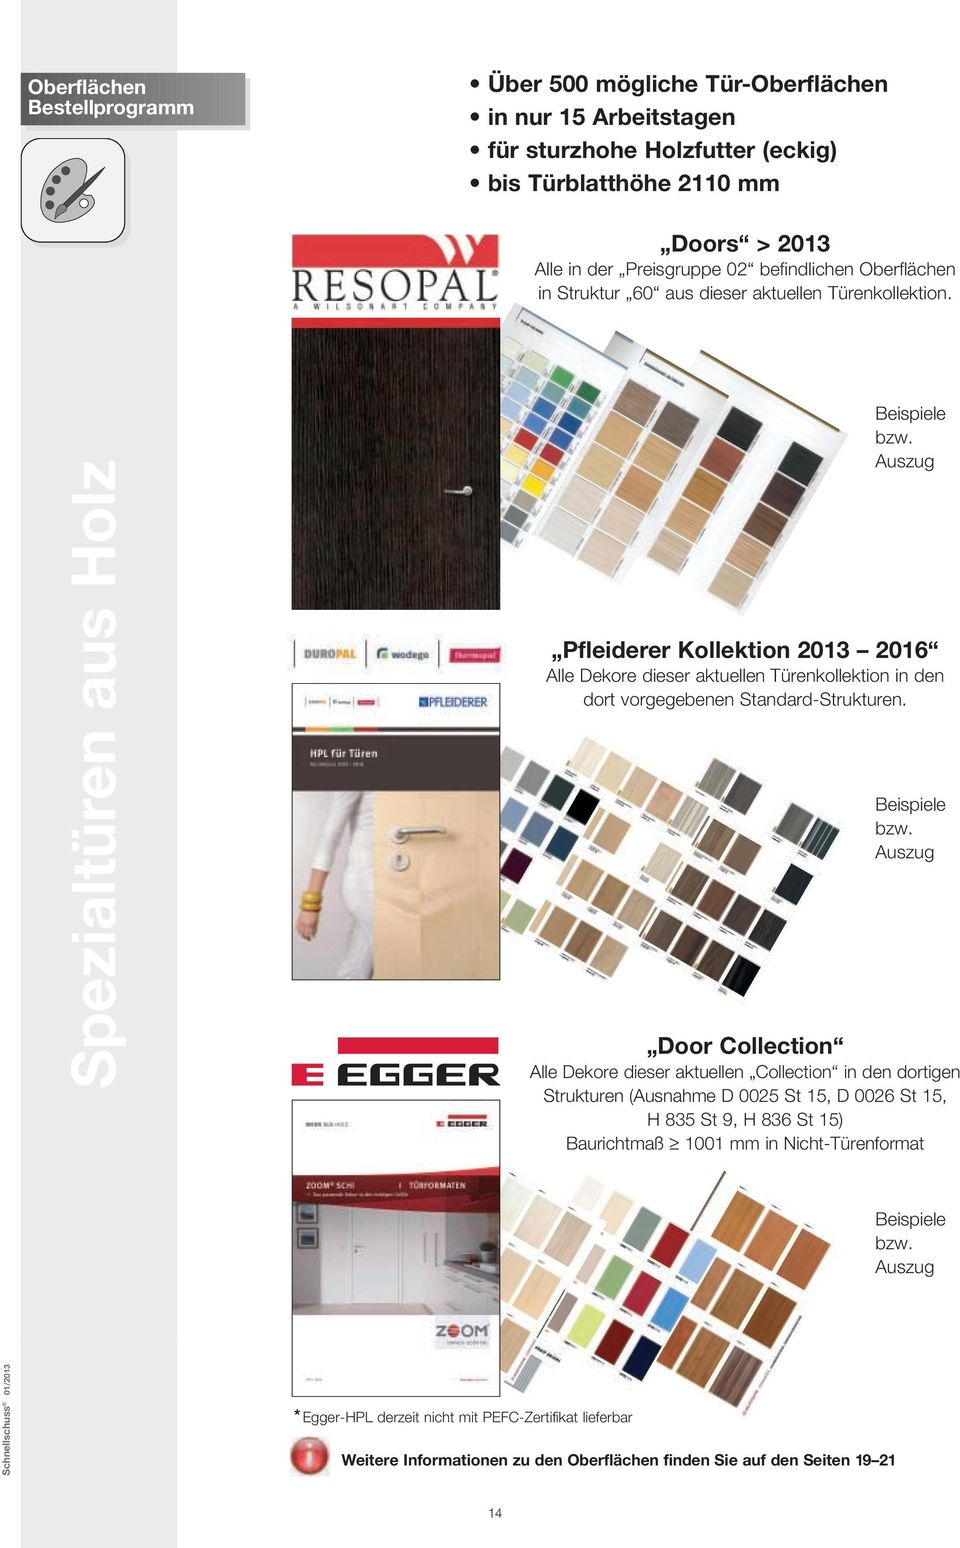 Auszug Pfleiderer Kollektion 2013 2016 Alle Dekore dieser aktuellen Türenkollektion in den dort vorgegebenen Standard-Strukturen. Beispiele bzw.